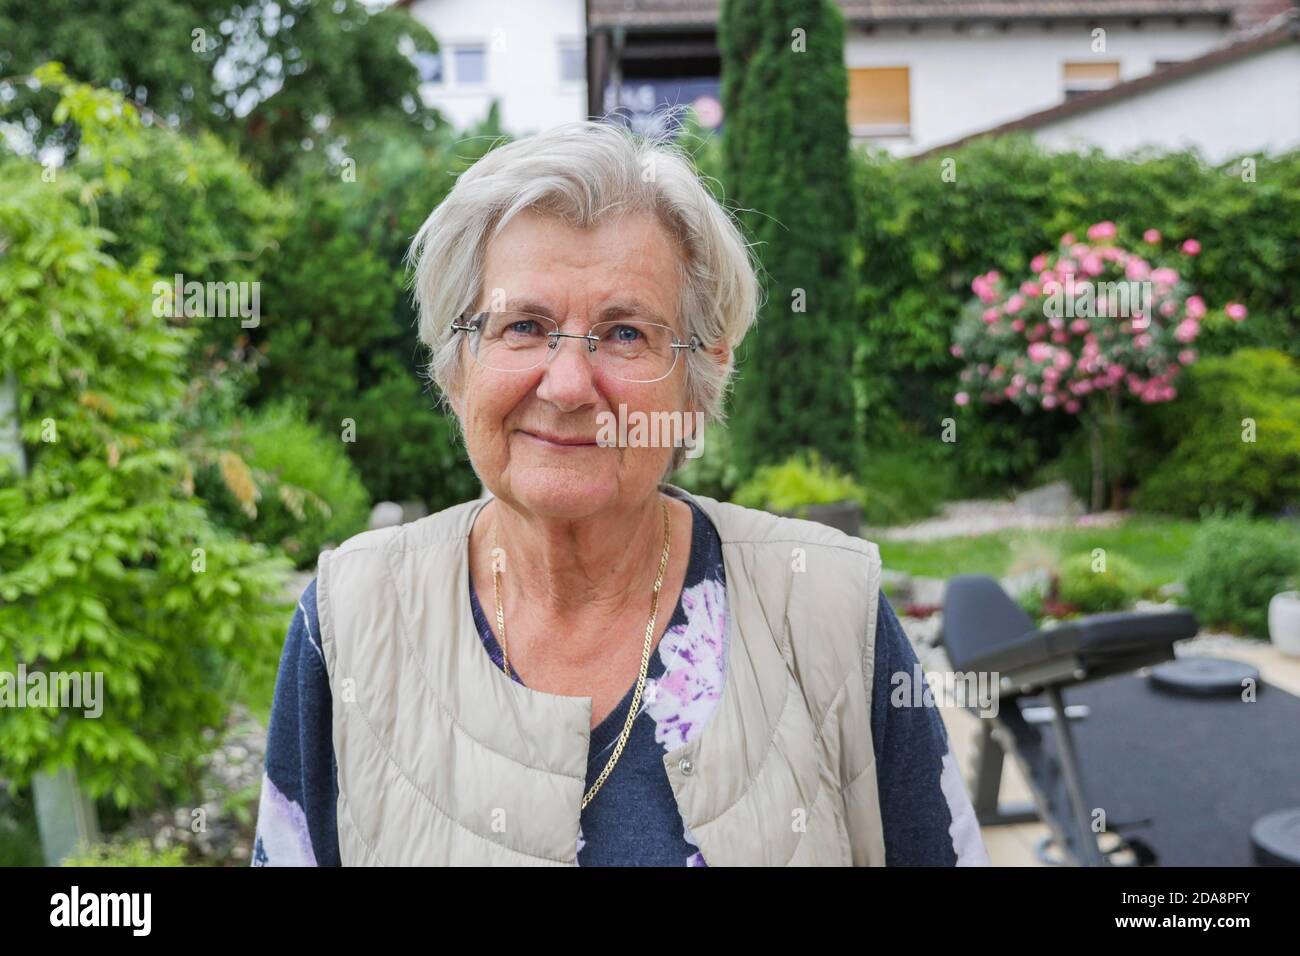 Portrait d'une femme caucasienne âgée regardant l'appareil photo. Prise de vue moyenne. Banque D'Images